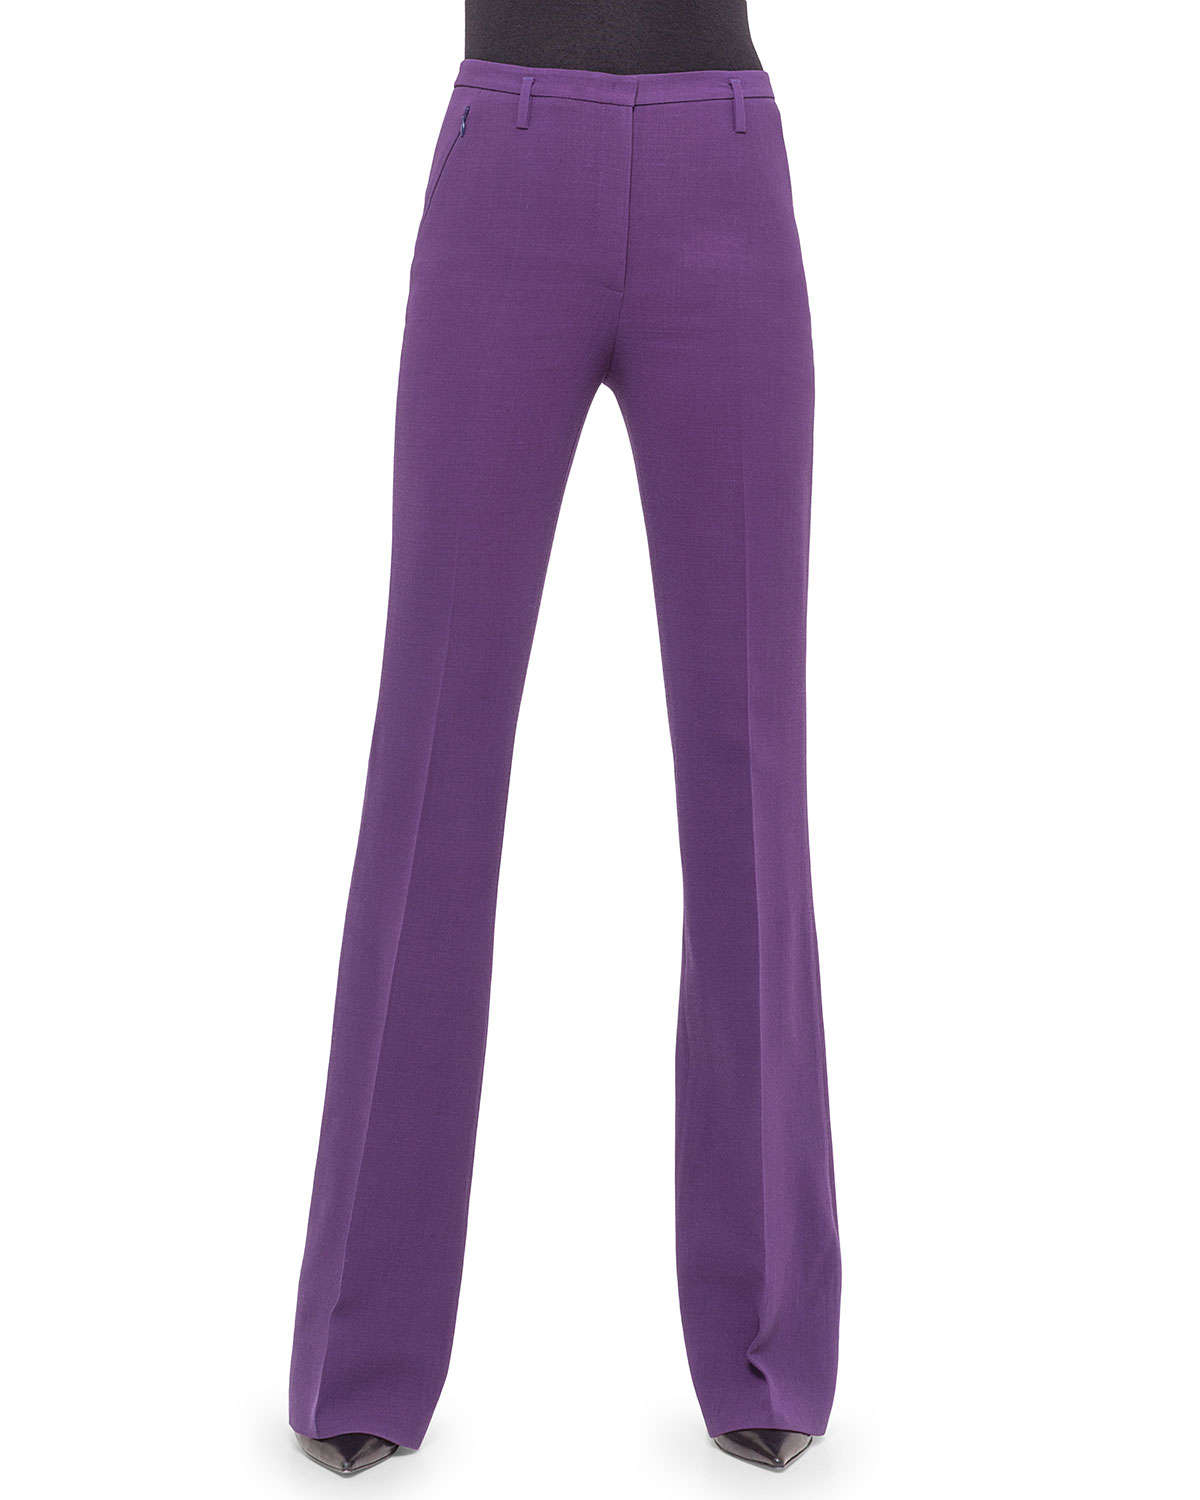 Lyst - Akris Farrah Wool-blend Pants in Purple